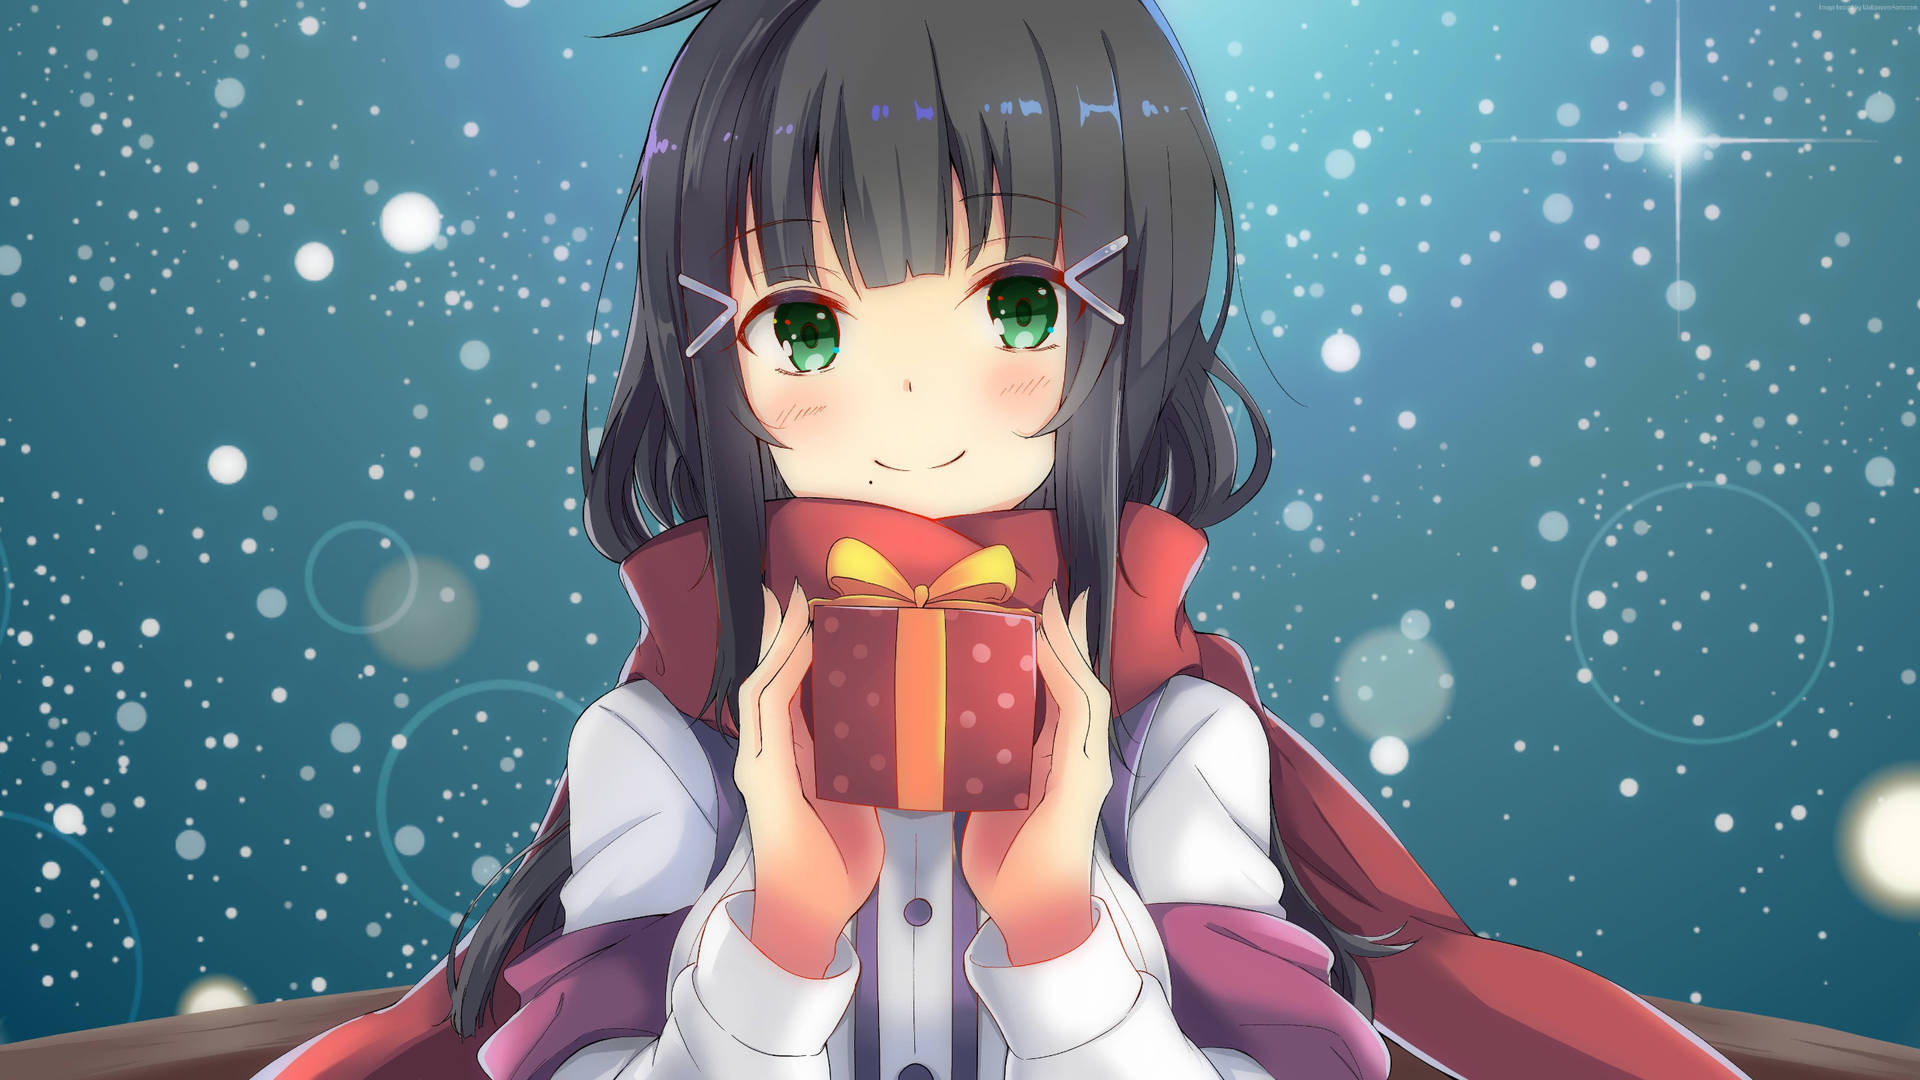 Anime Christmas Girl With Gift Box